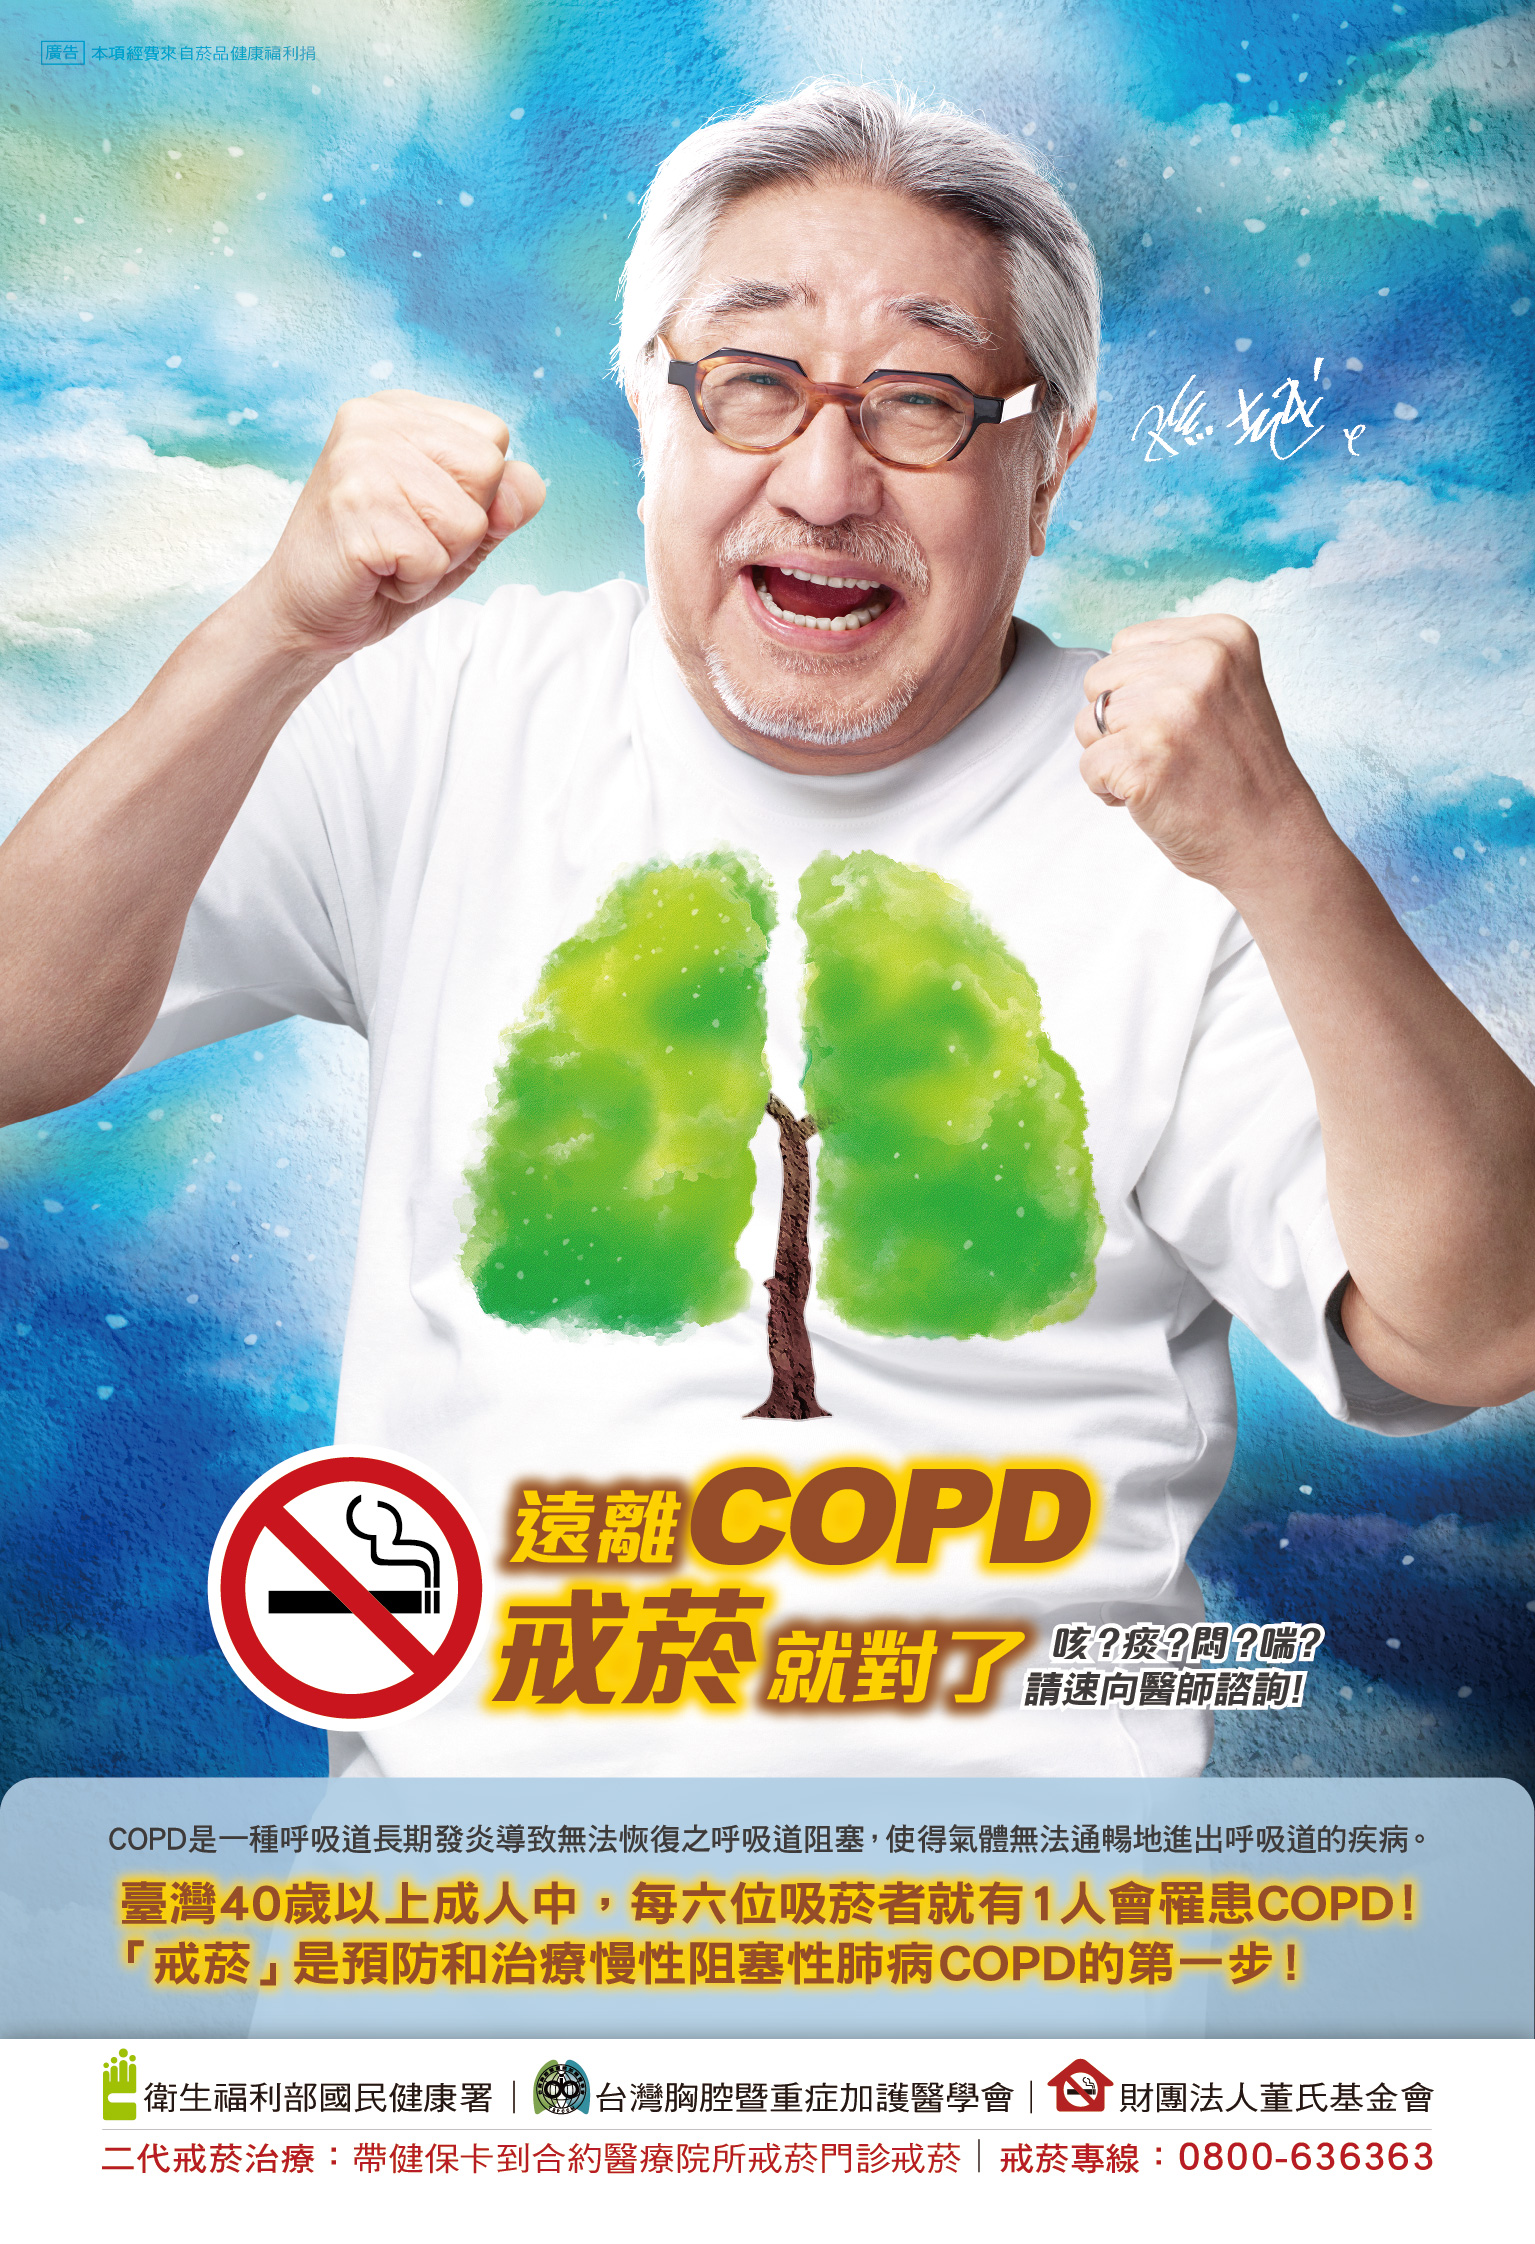 遠離COPD戒菸就對了 (單張)